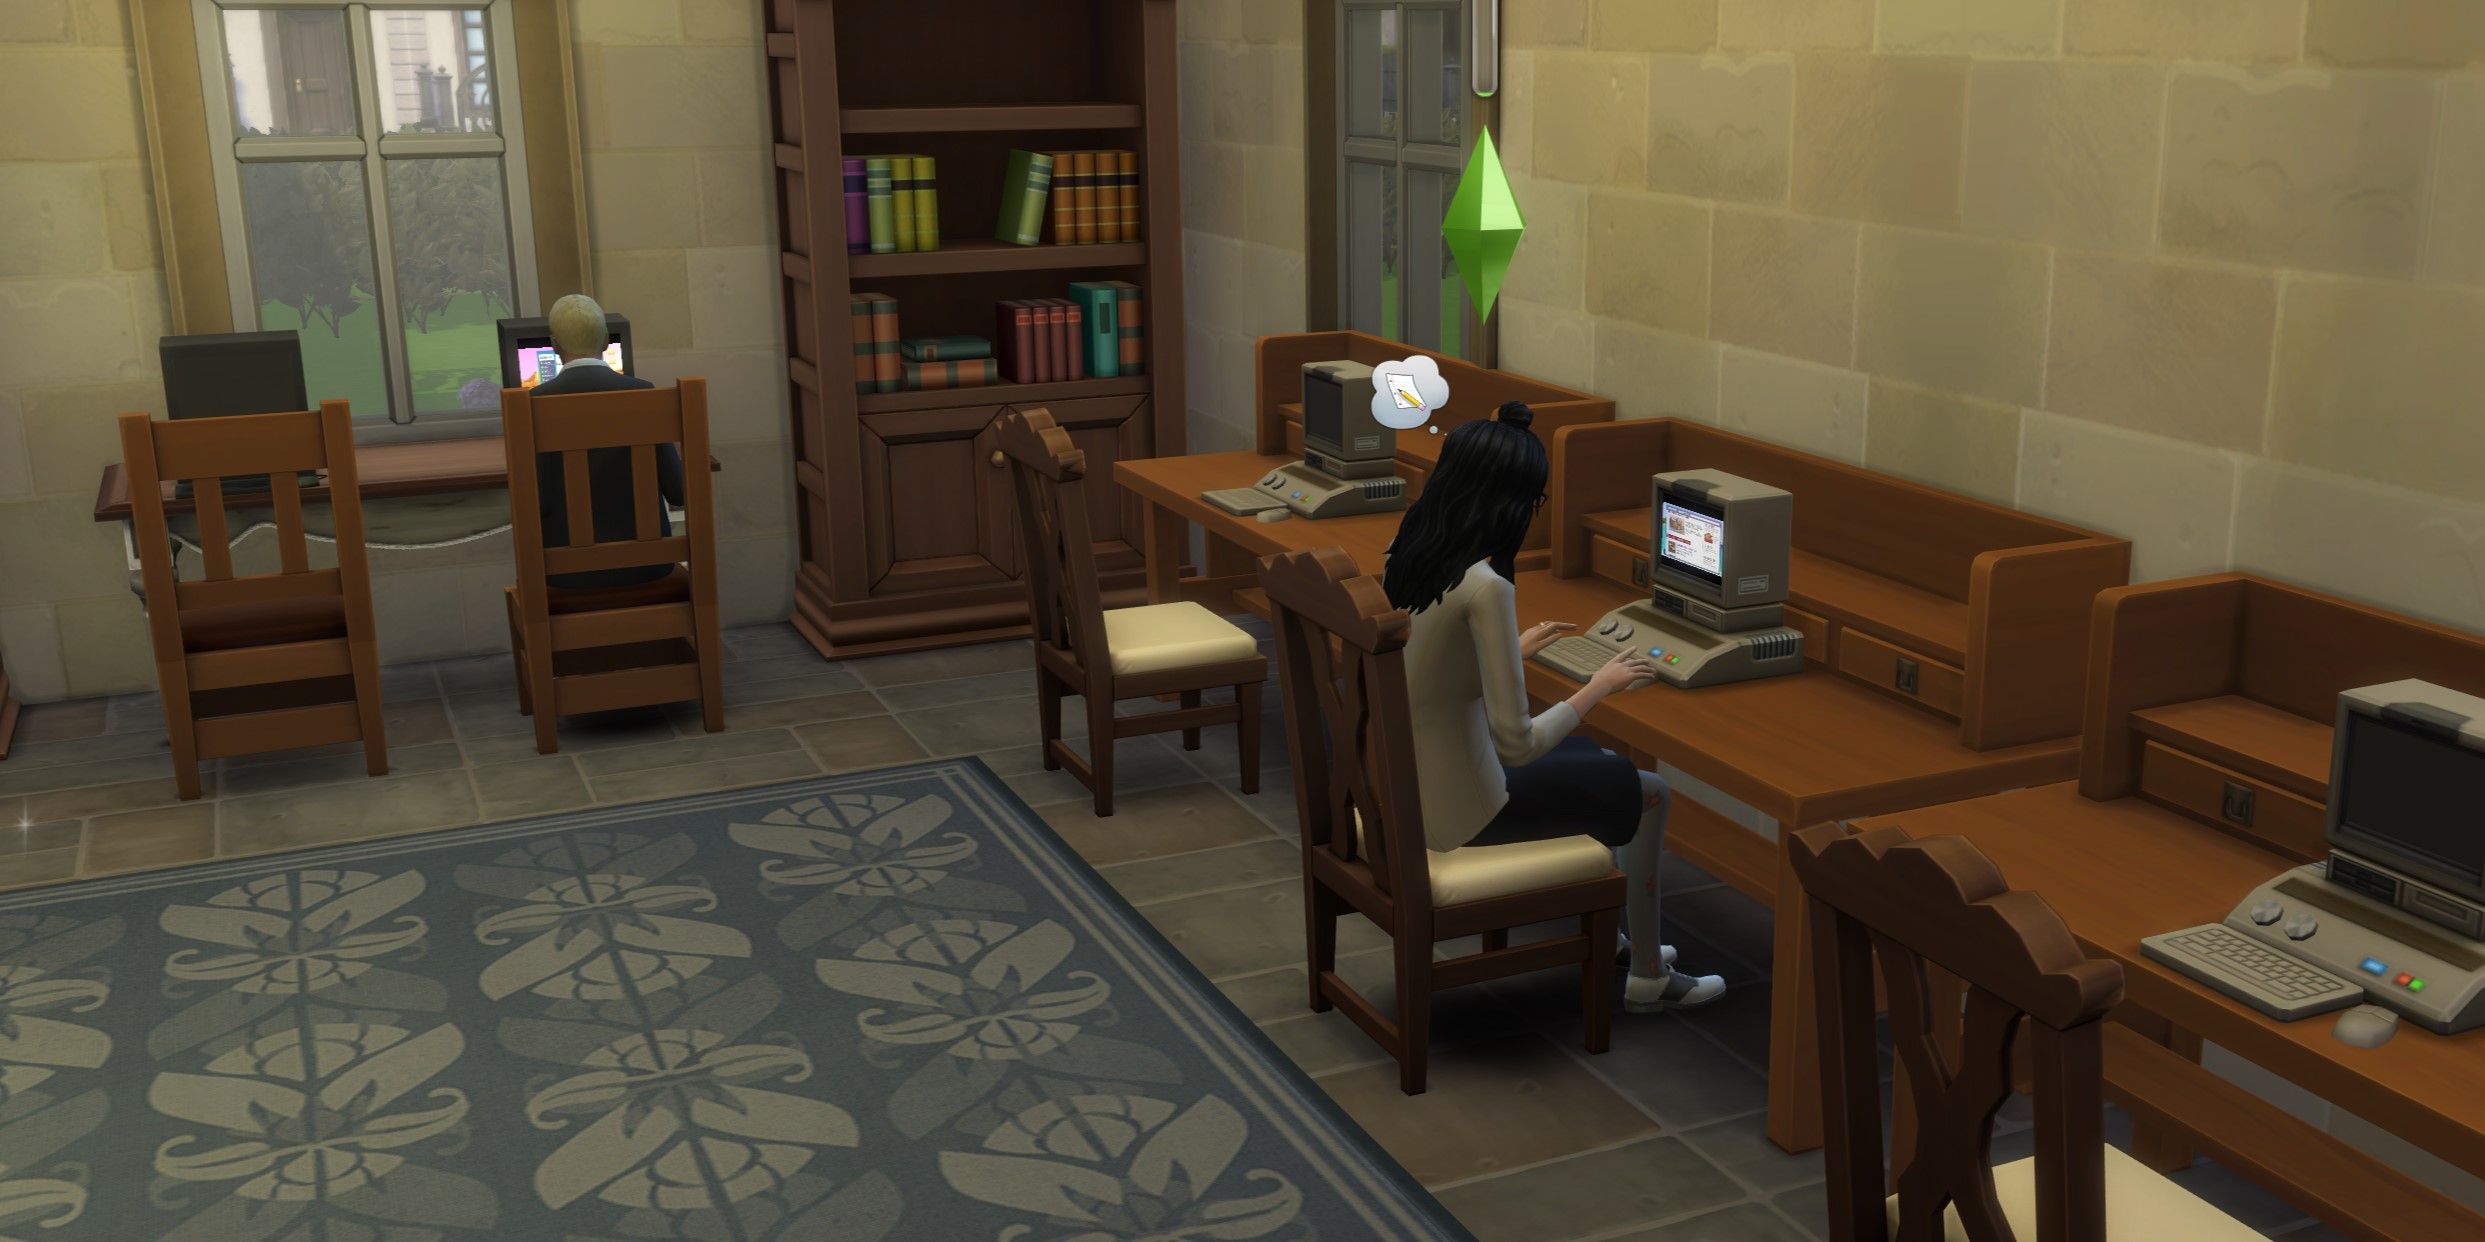 The Sims 4: Изображение Сима, изучающего исследовательский компьютер